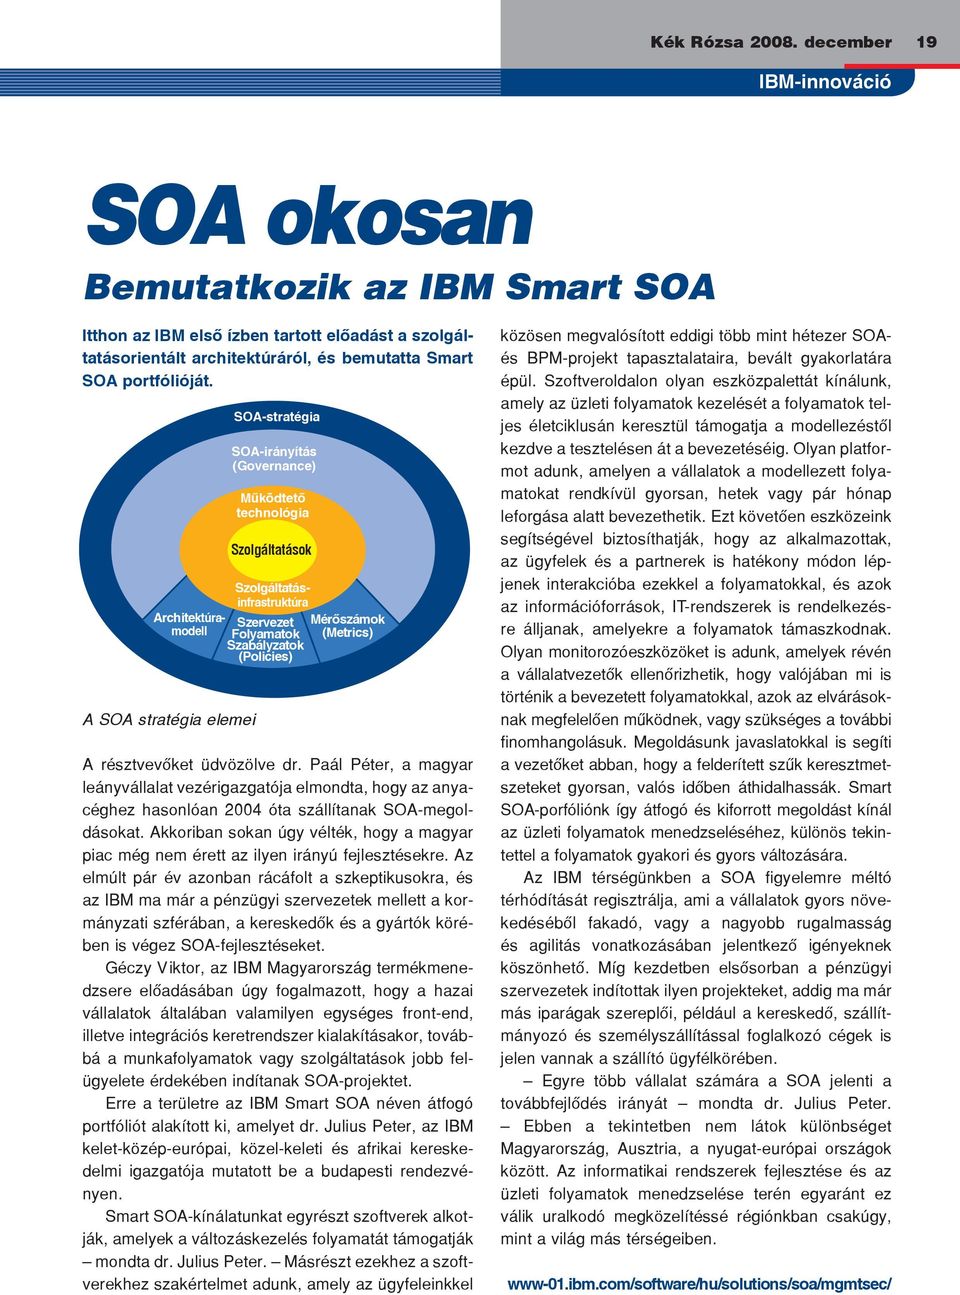 Szolgáltatásinfrastruktúra Architektúramodell A SOA stratégia elemei SOA-stratégia SOA-irányítás (Governance) Mûködtetô technológia Szolgáltatások Szervezet Folyamatok Szabályzatok (Policies)